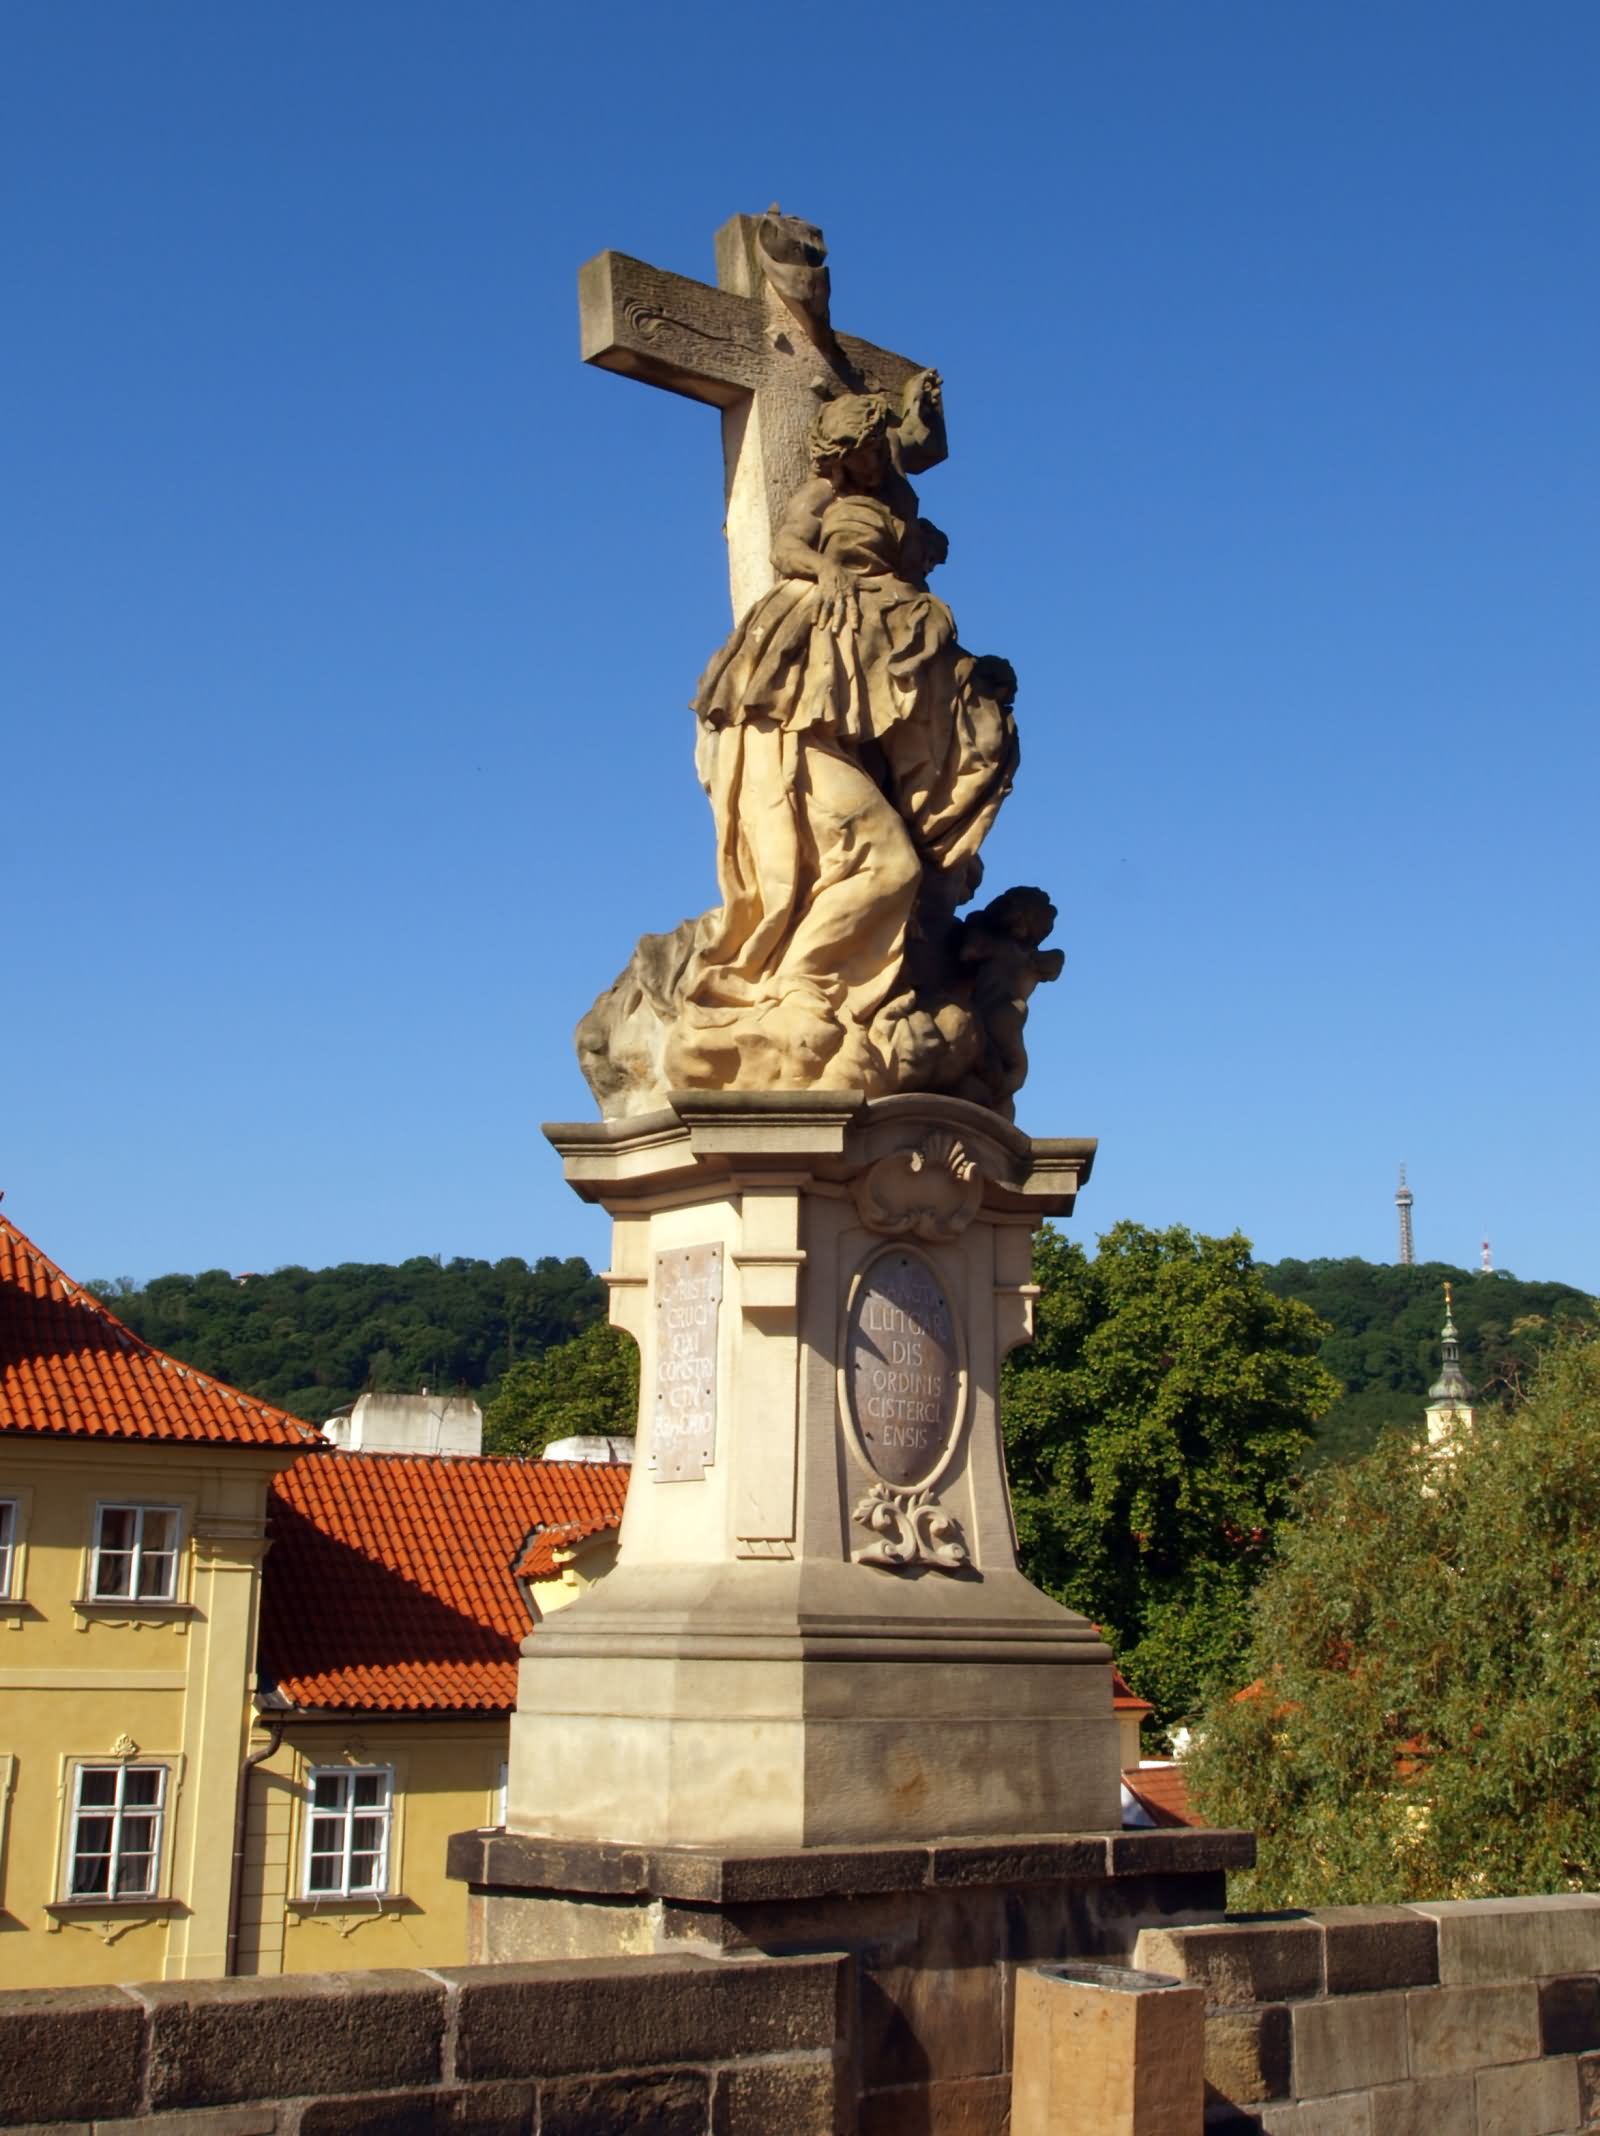 Incredible Statue At The Charles Bridge, Prague